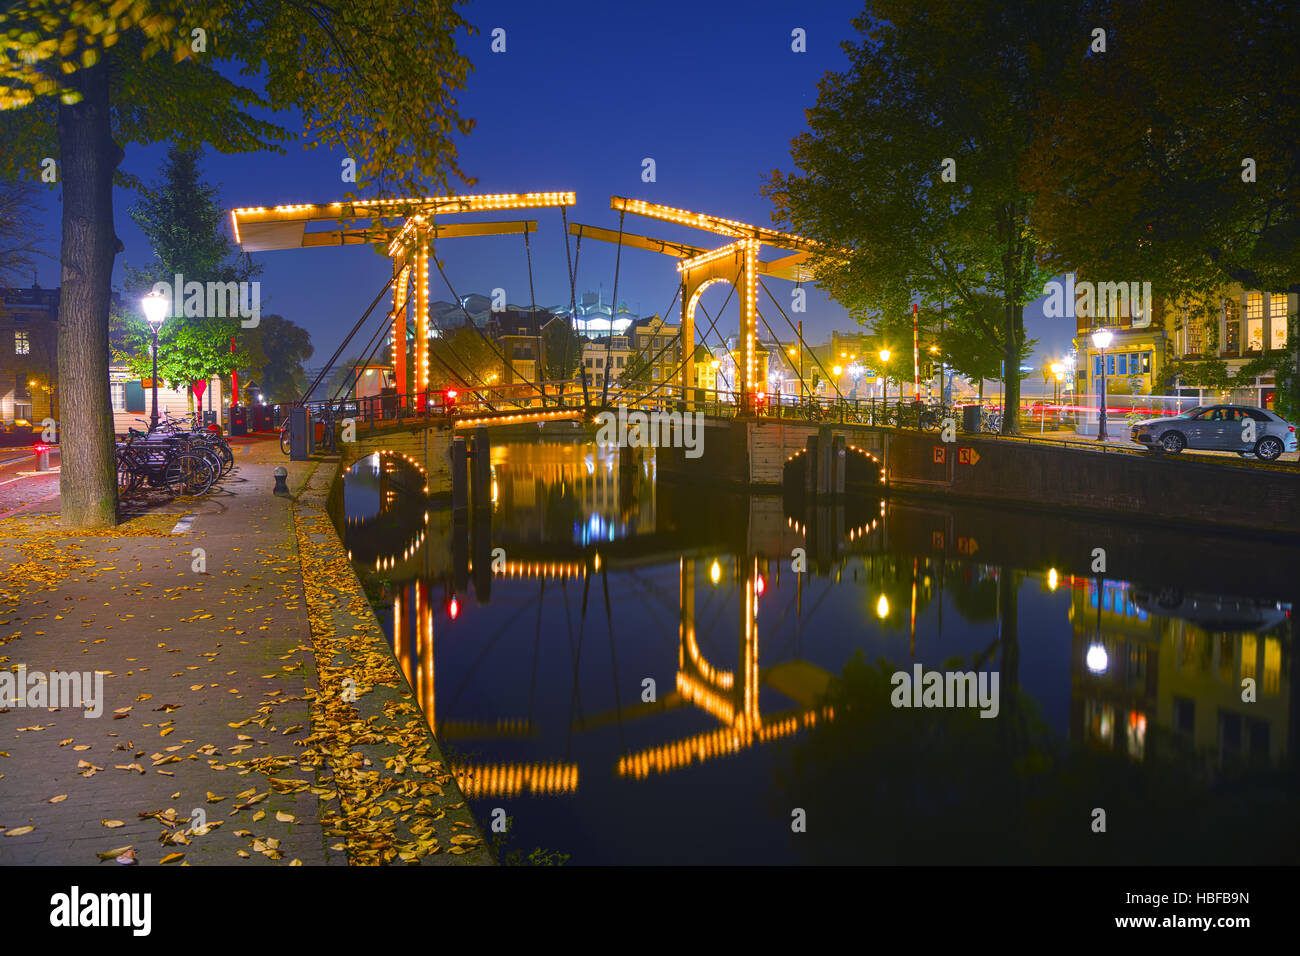 Blick auf die Stadt Amsterdam mit Kanälen und Brücken in der Nacht Stockfoto